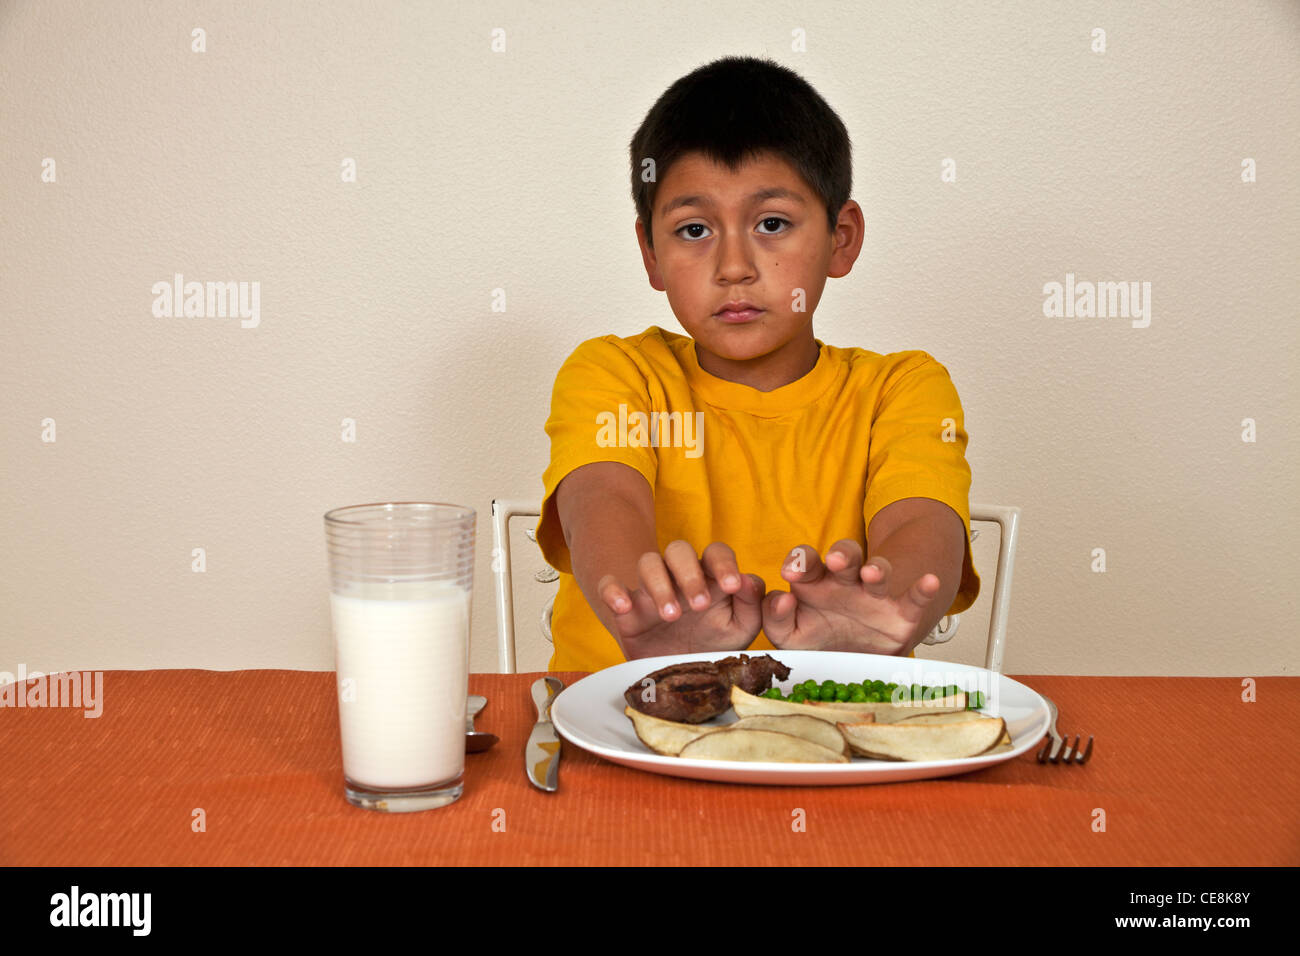 Strong gewollt stur 10-11 Jahre Alter spanischer Junge will nicht essen, Multi ethnische Vielfalt rassisch verschiedenen multikulturellen kulturelle. Stockfoto